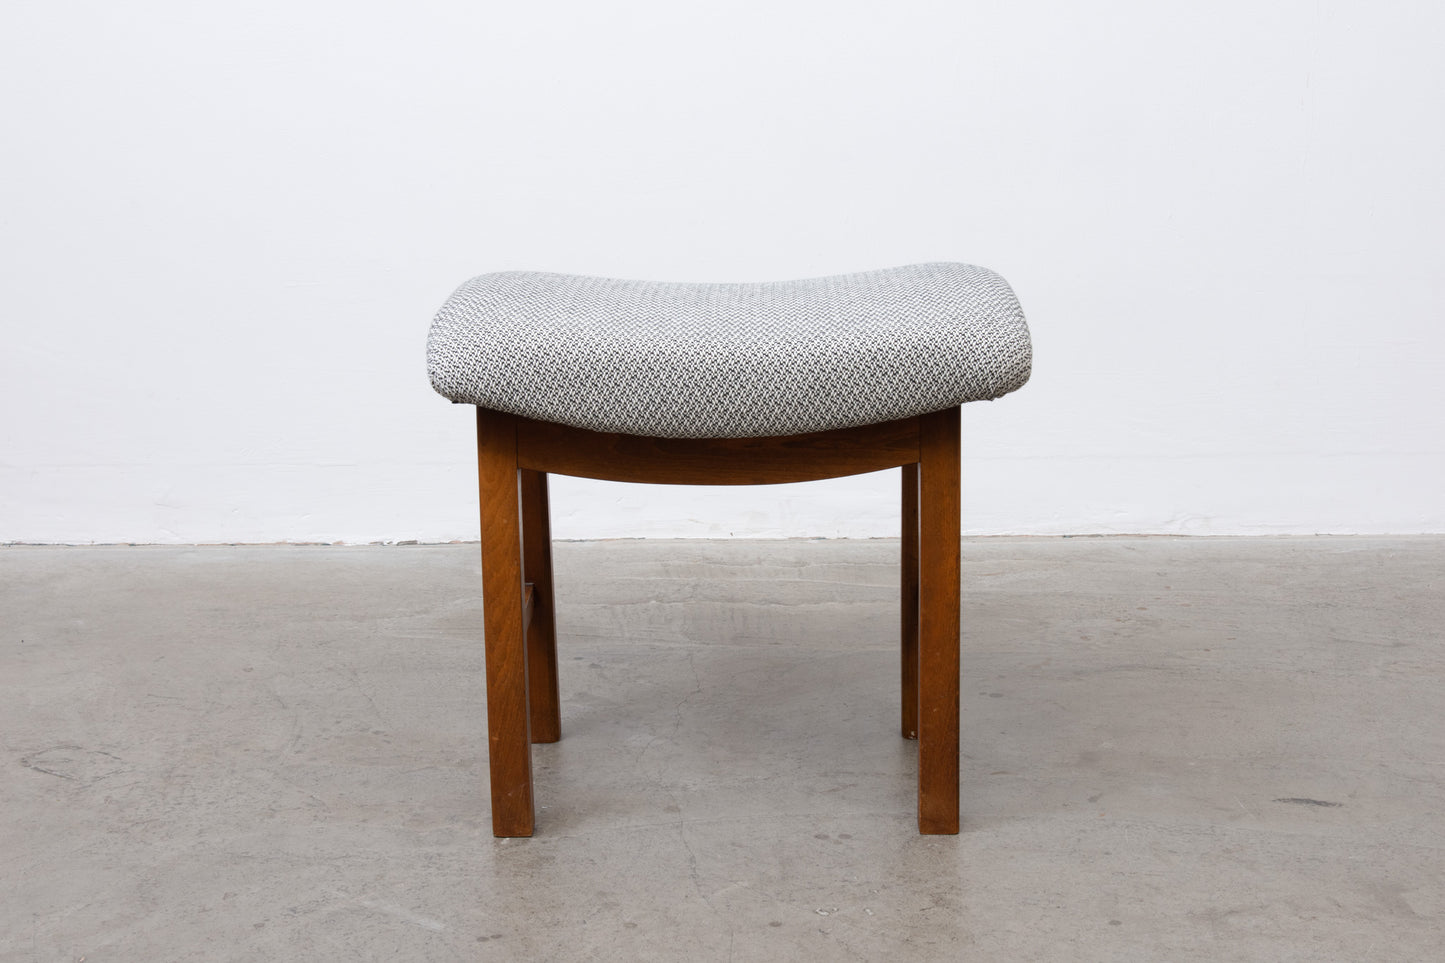 1950s Danish stool